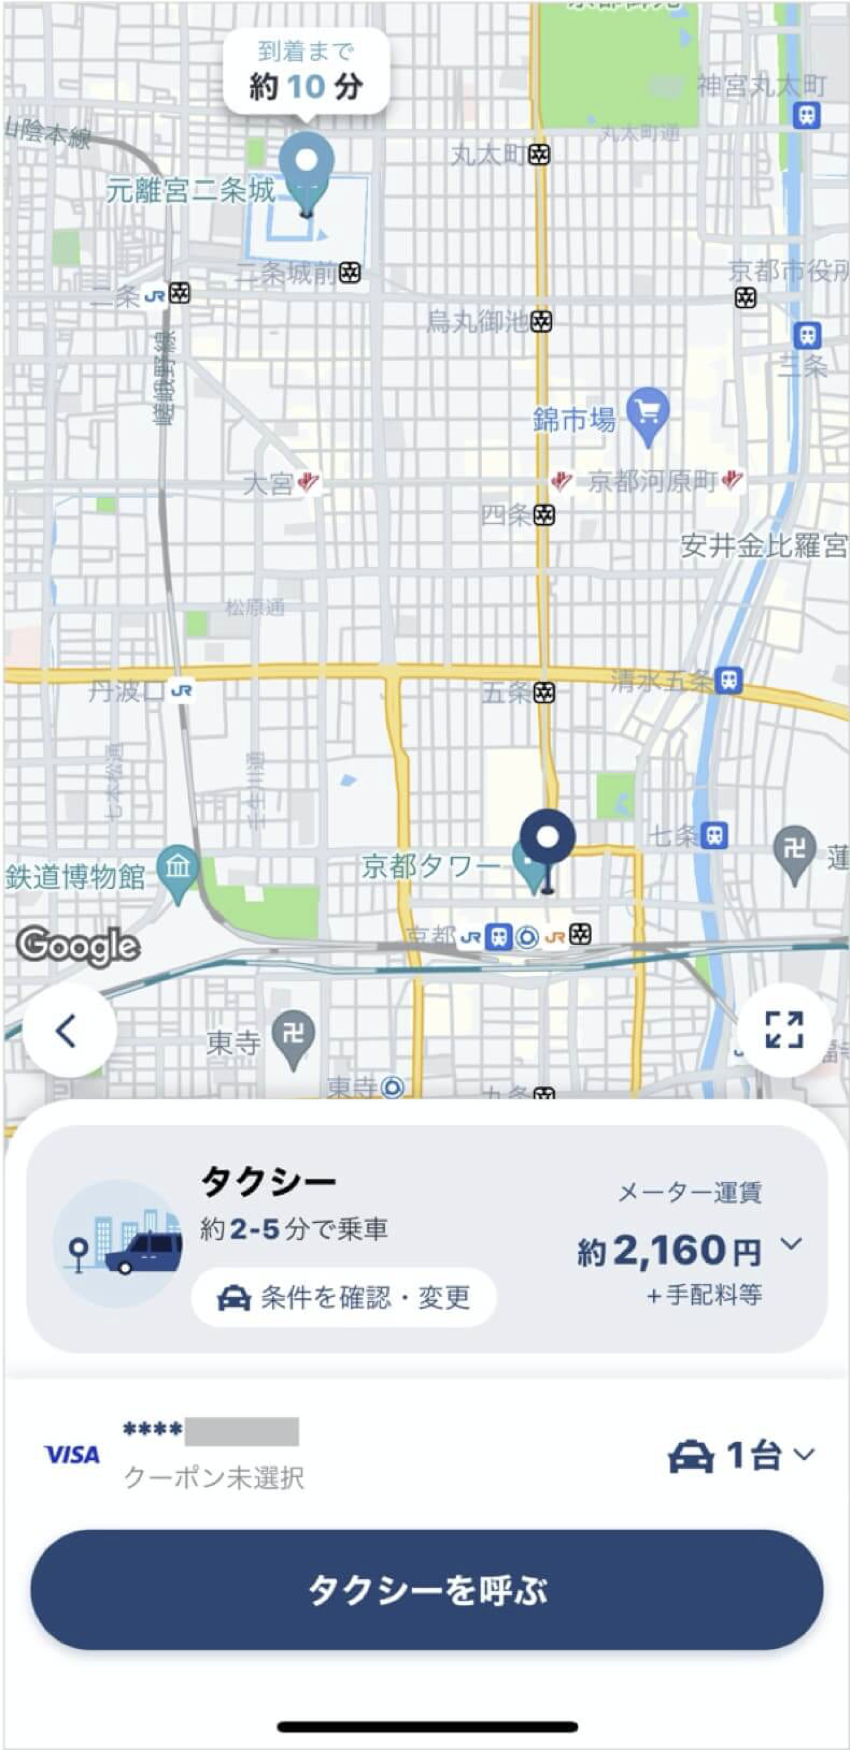 京都駅から二条城までのタクシー料金・所要時間まとめ